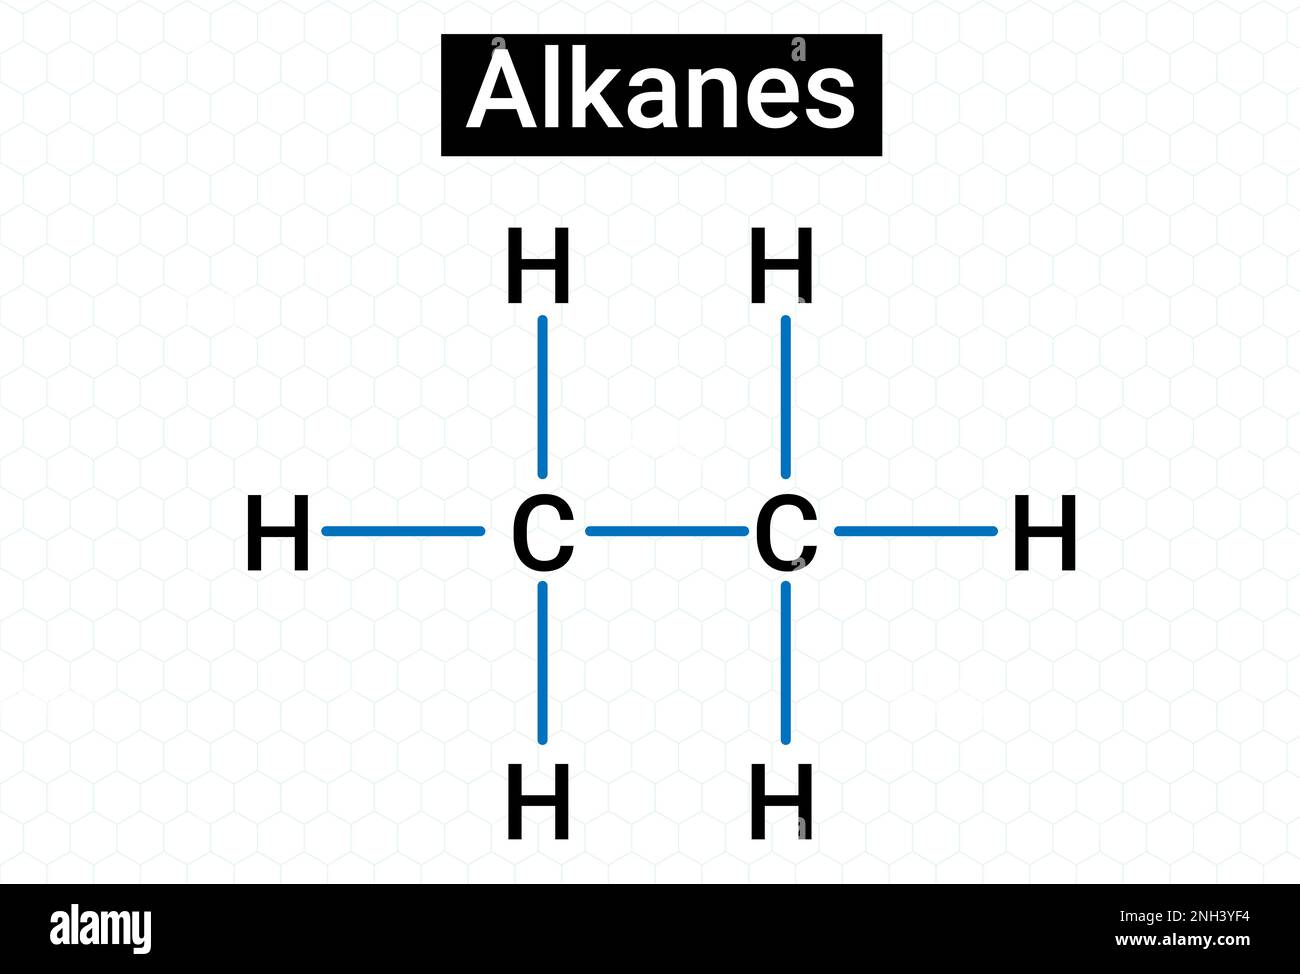 Les alcanes sont une série de composés qui contiennent des atomes de carbone et d'hydrogène avec des liaisons covalentes simples. Illustration de Vecteur